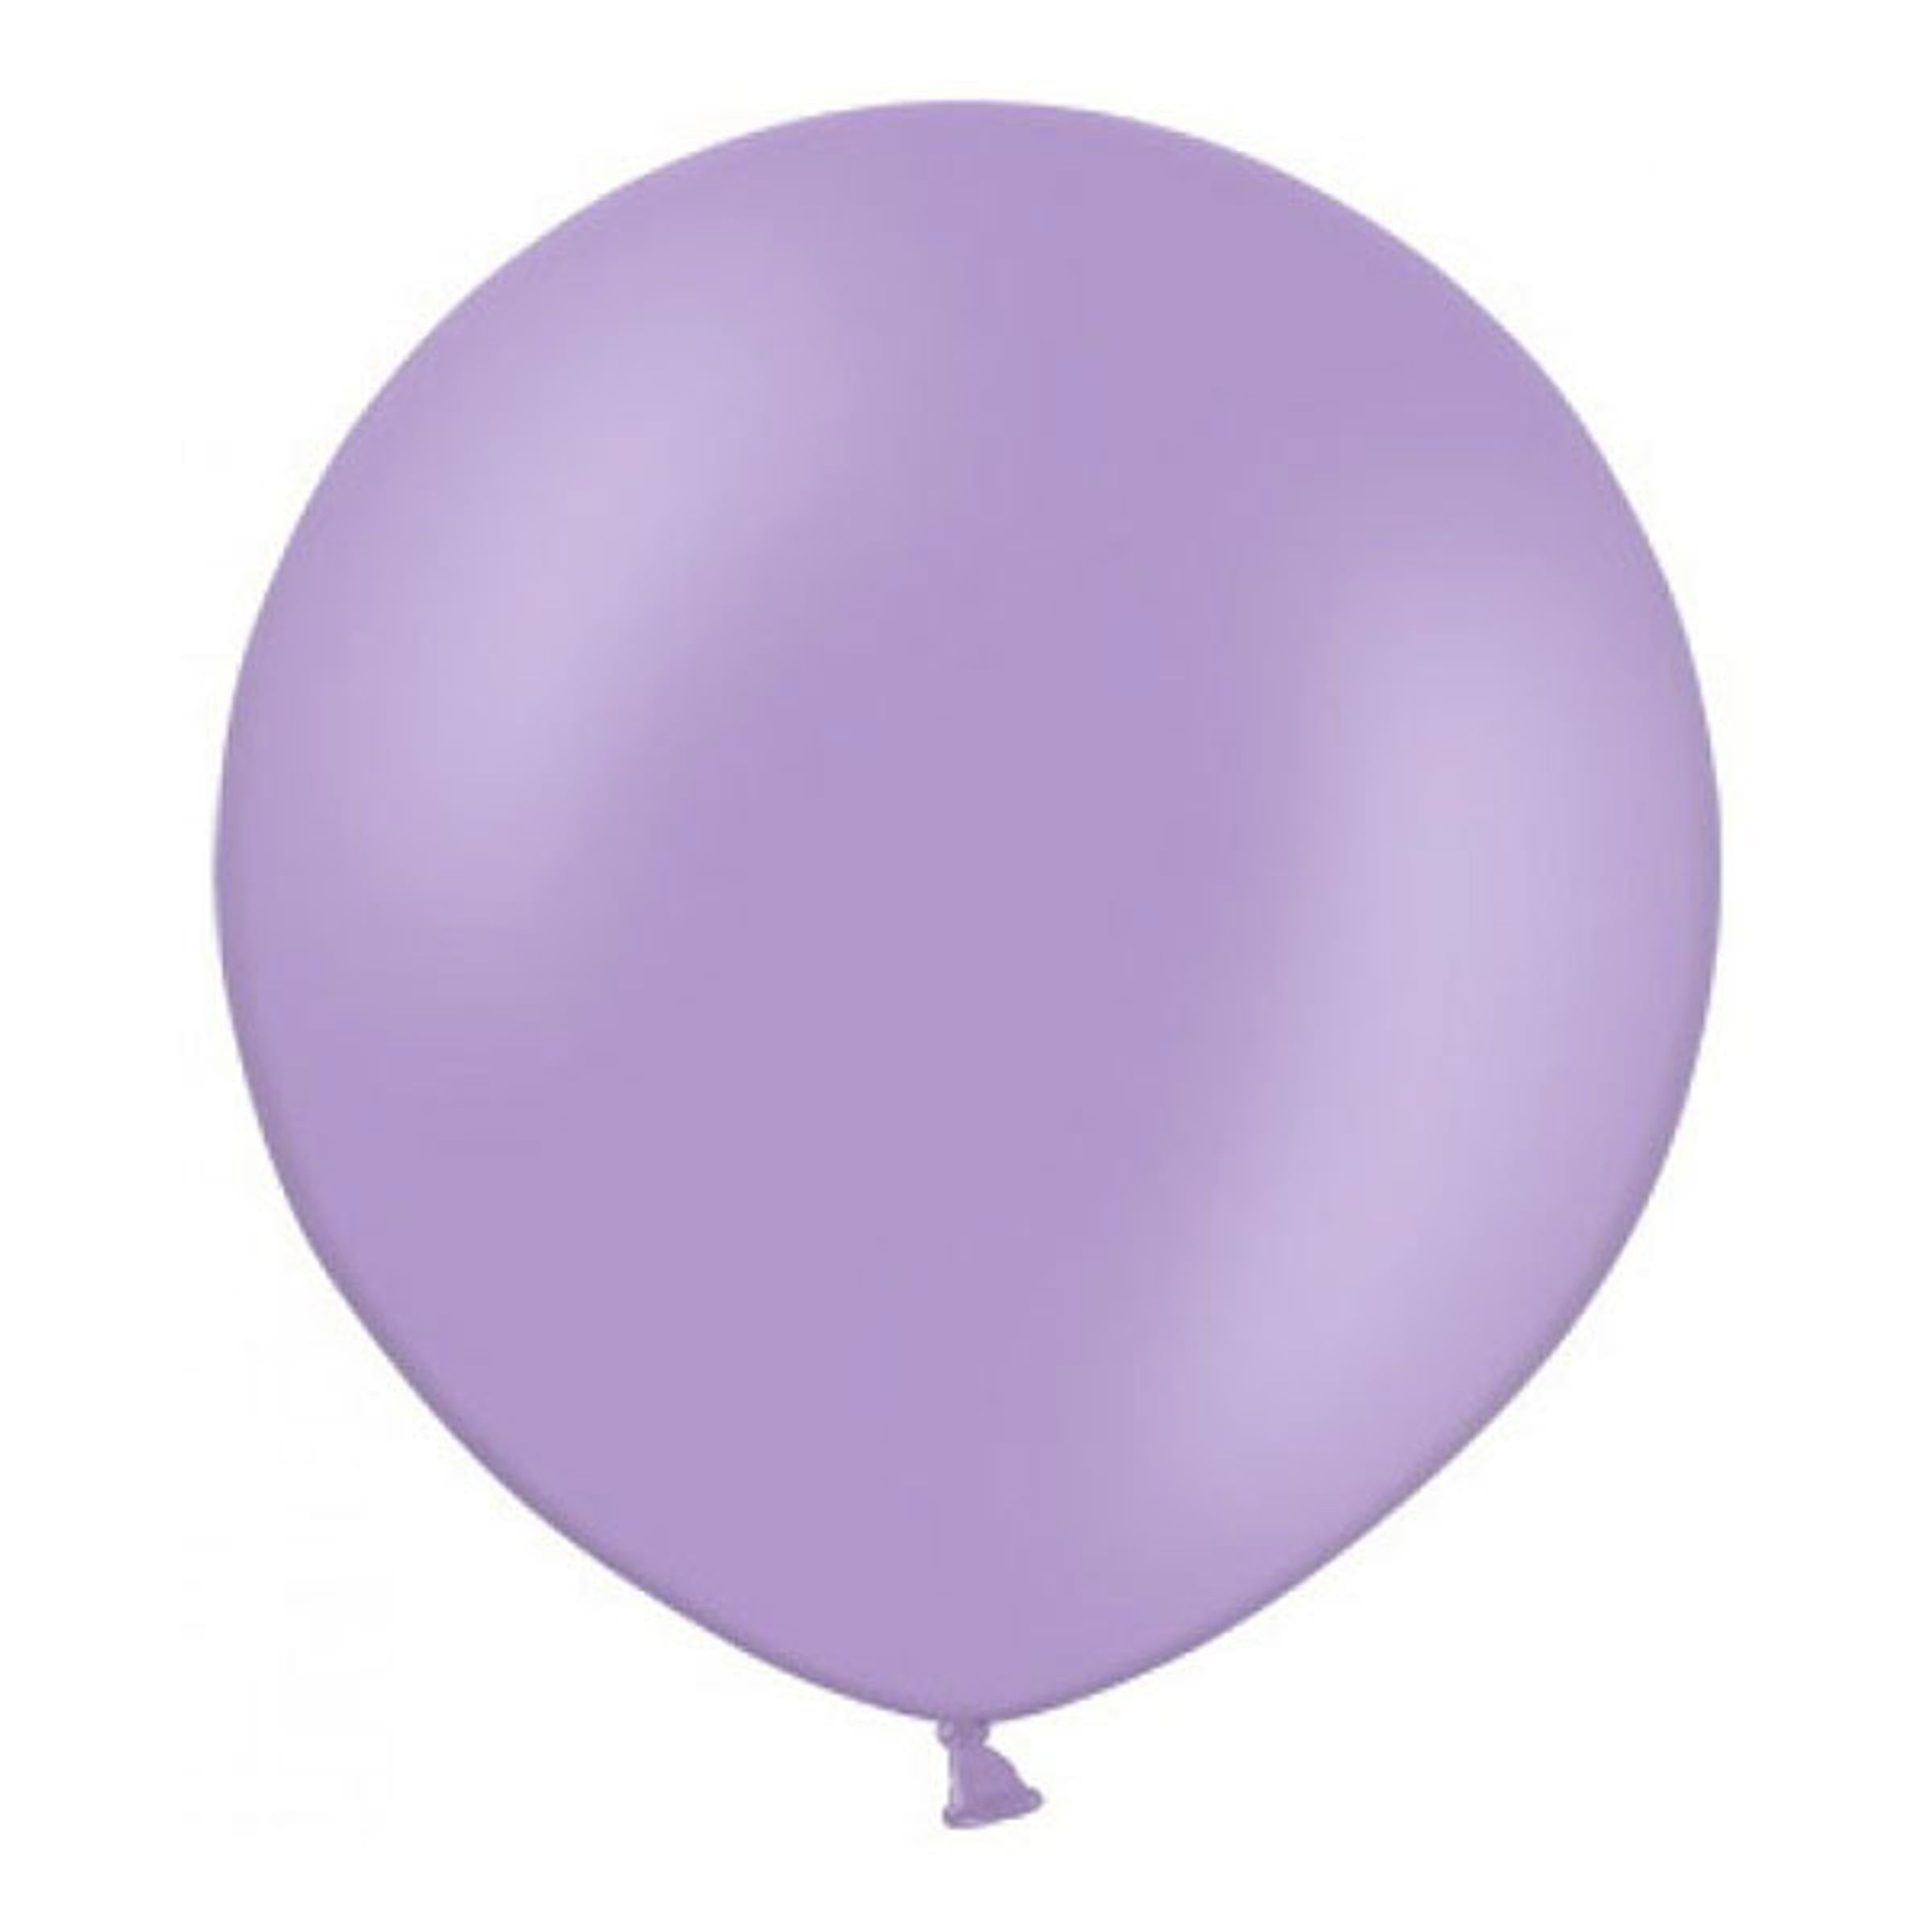 Läs mer om Jätteballong Lila